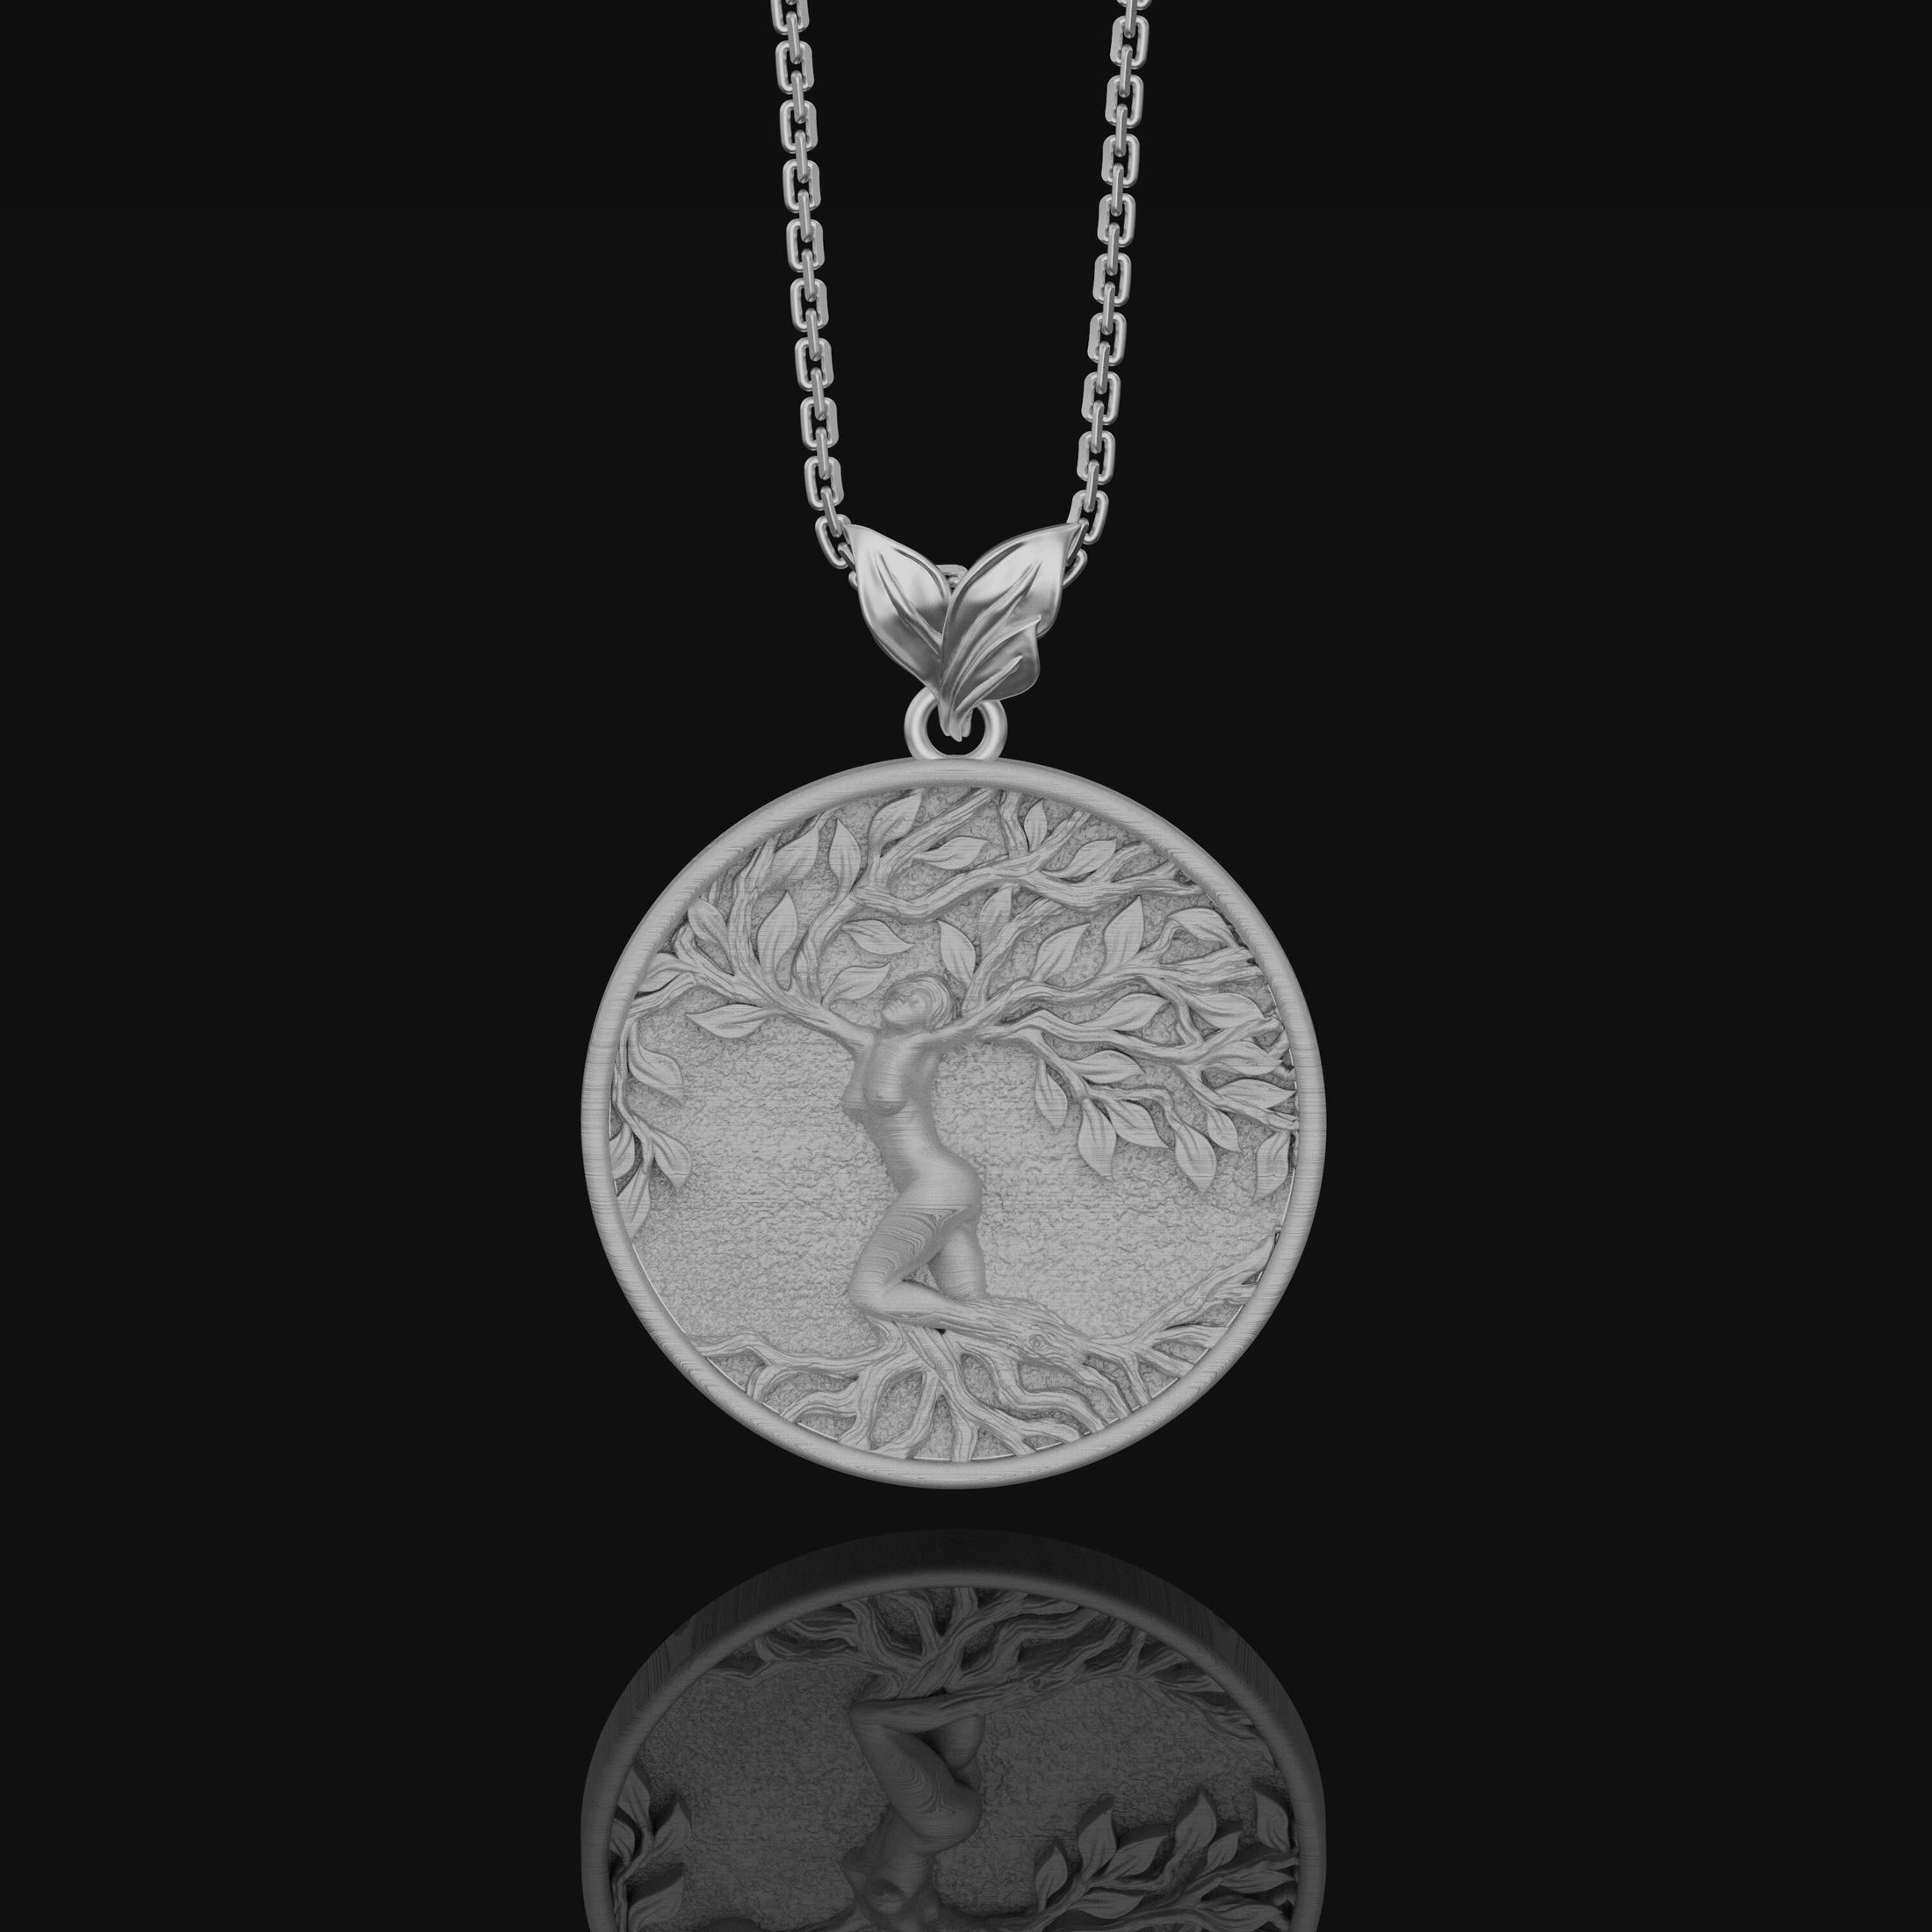 Yggdrasil Tree Of Life Pendant, Norse Mythology Gift, Vikings Asgard, Norse Mythology, Norse Pagan Necklace, Celtic World Tree Polished Matte